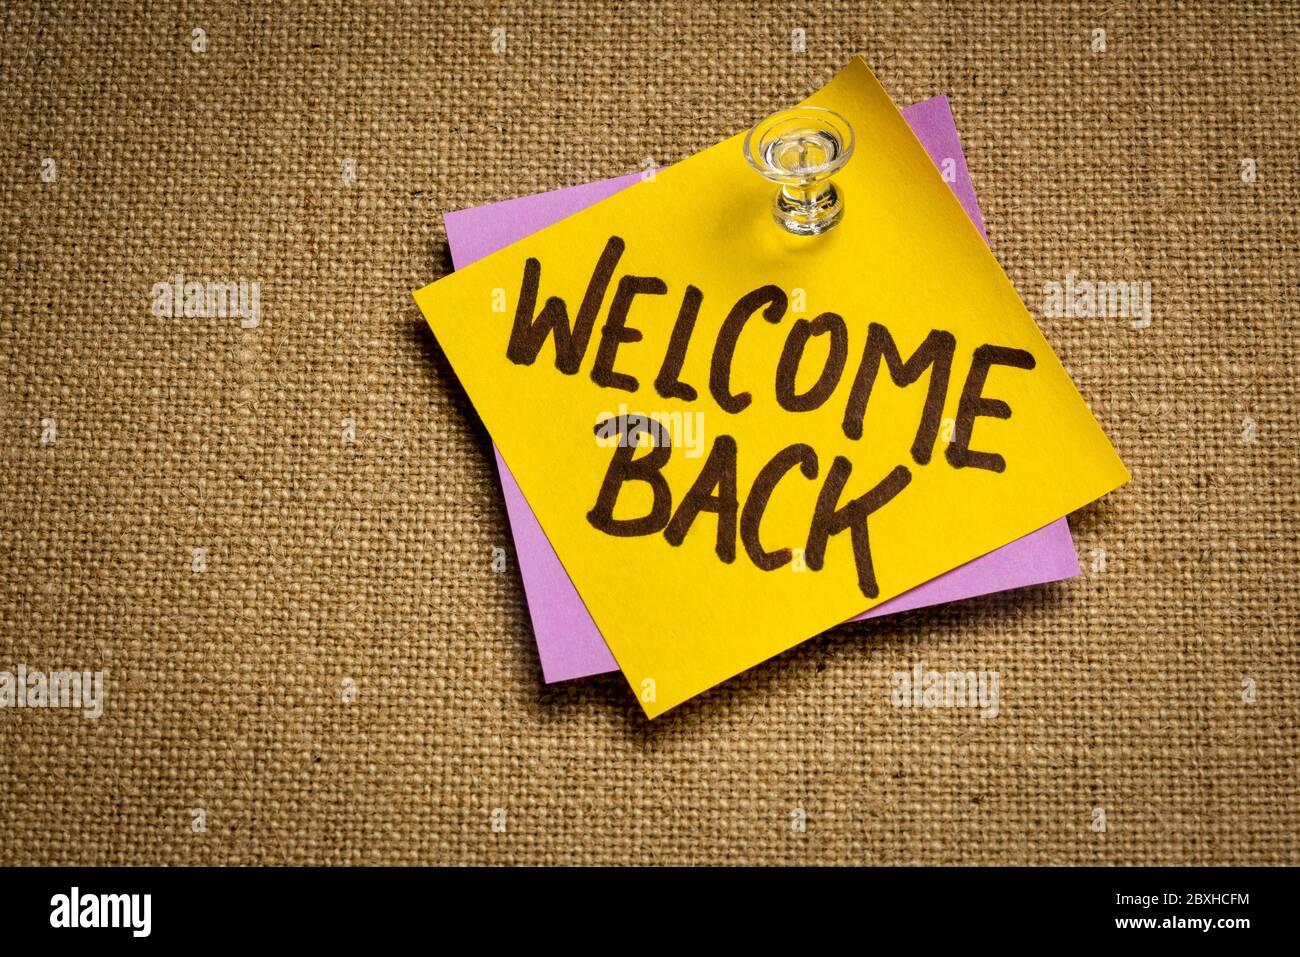 Willkommen zurück - Handschrift auf einem Haftnotiz, Geschäftswiedereröffnung Konzept Stockfoto